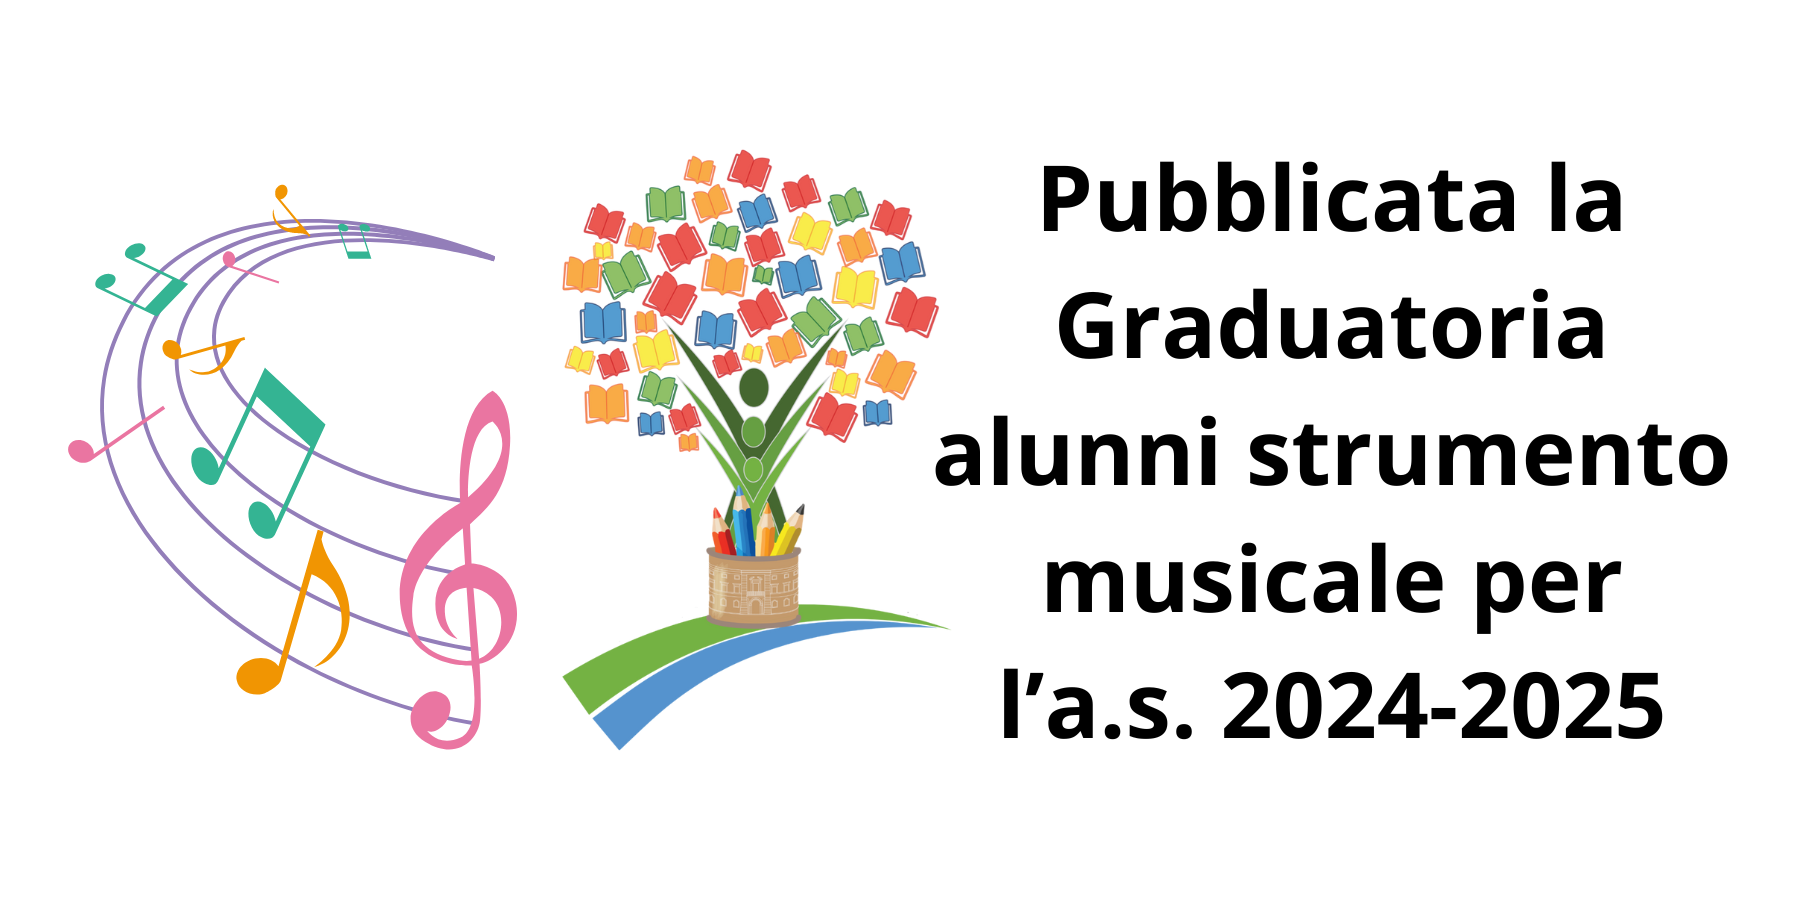 Graduatoria alunni strumento musicale per a.s. 2024-2025 - Istituto Comprensivo "Capitano Biagio Puglisi"